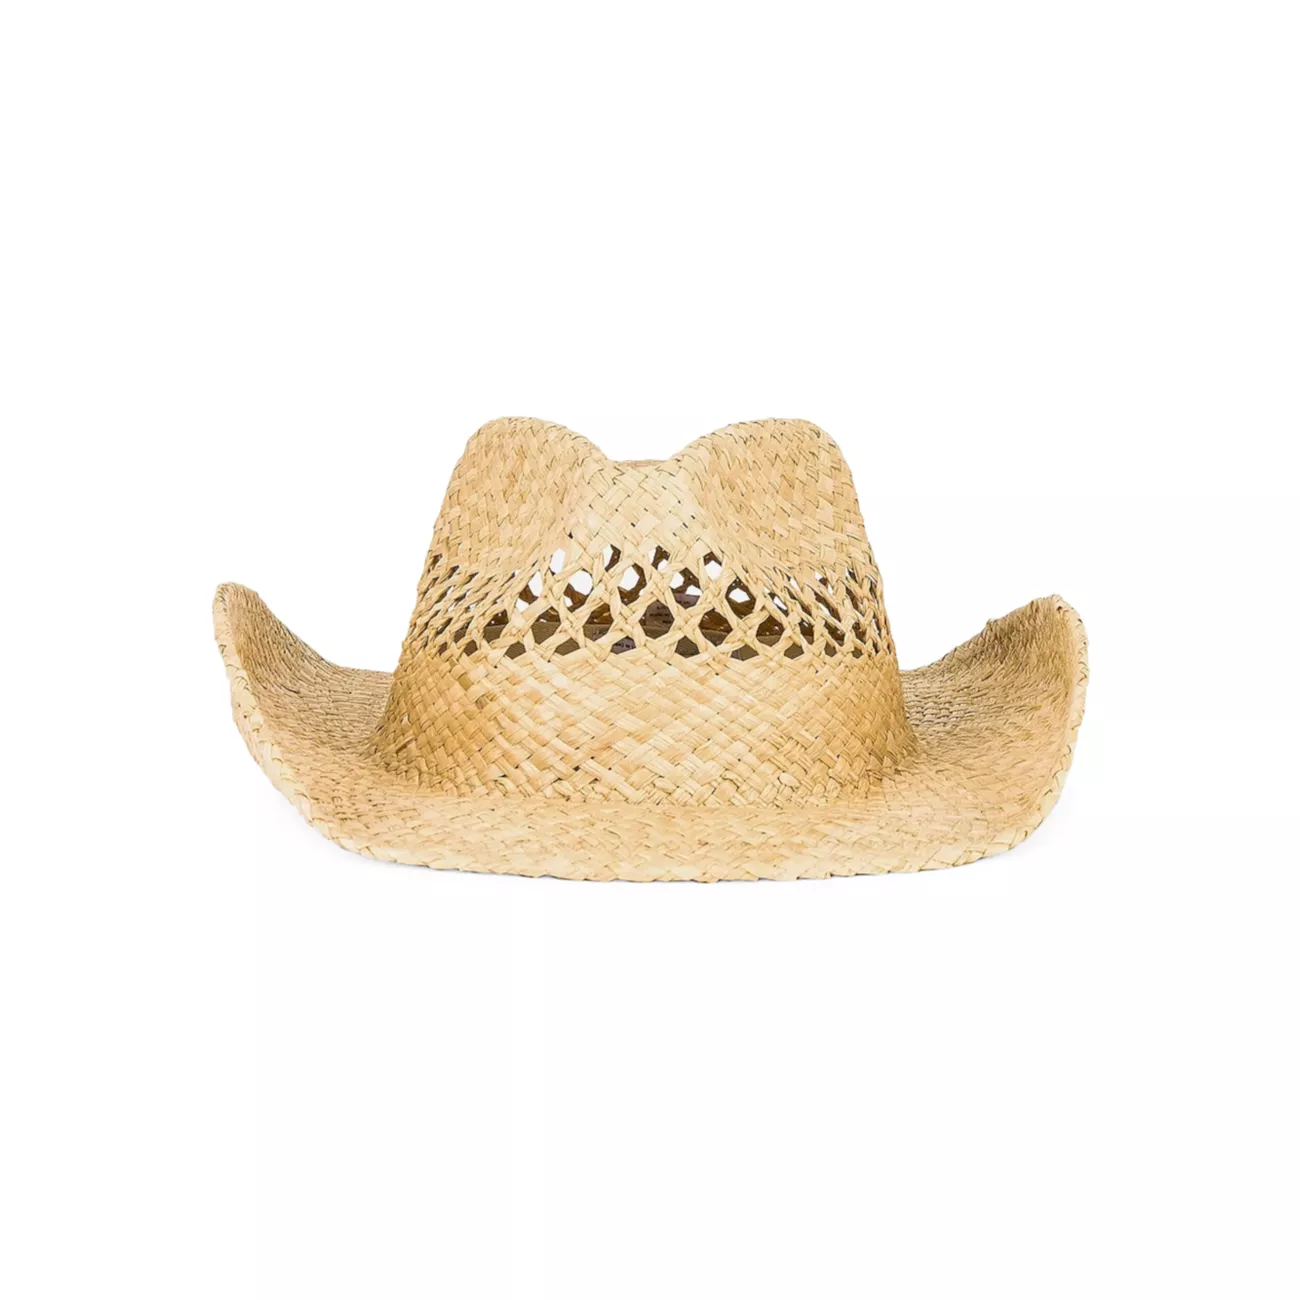 The Desert Raffia Cowboy Hat Lack of Color